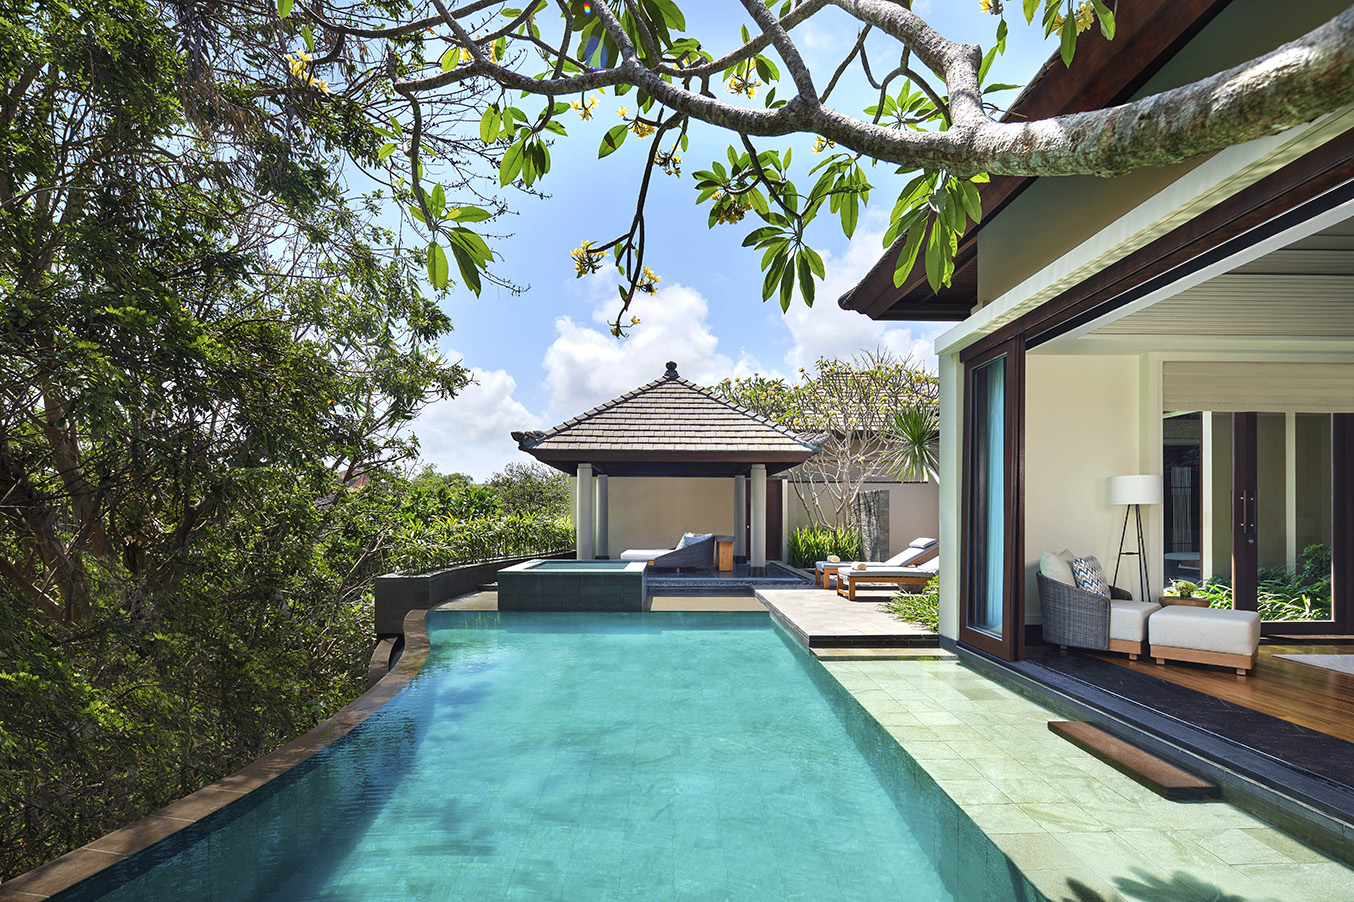 Umana Bali tropical garden pool villa